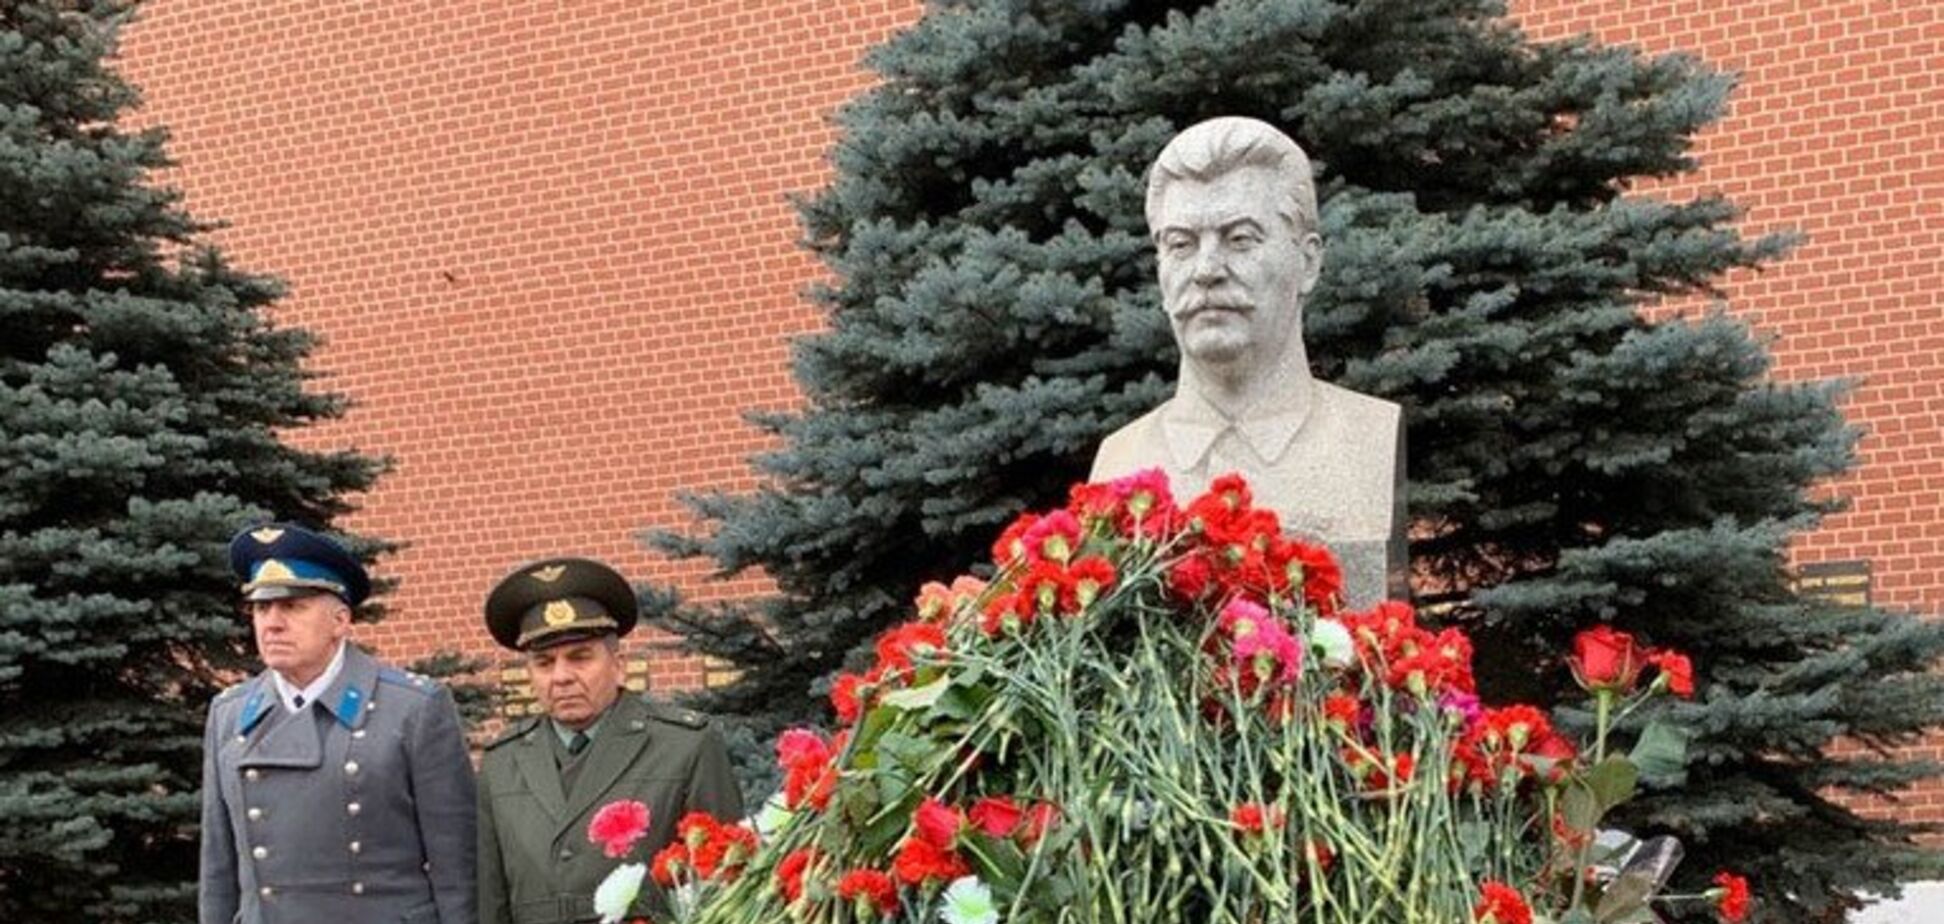 Сеть возмутило поклонение РФ убийце-Сталину